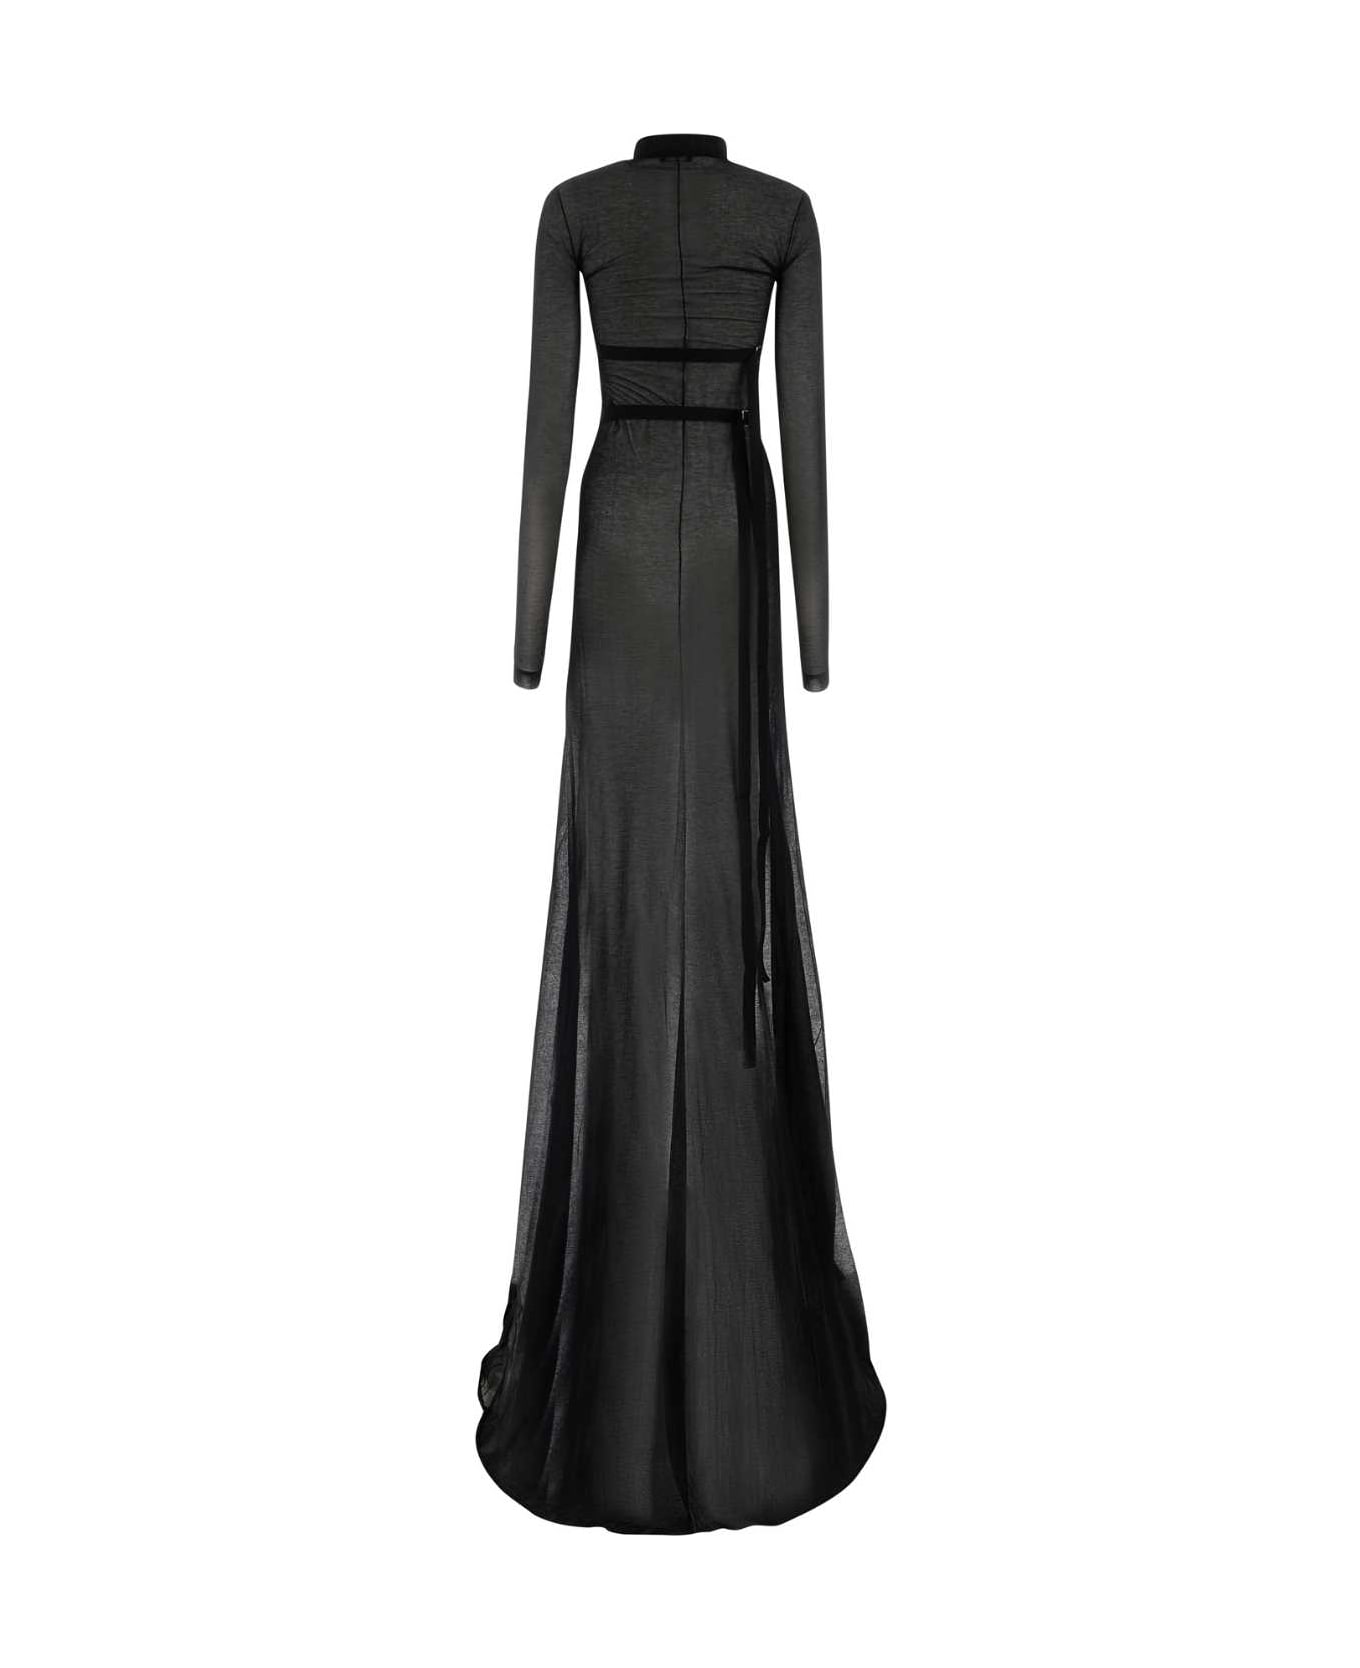 Ann Demeulemeester Black Cotton Blend Long Dress - 099